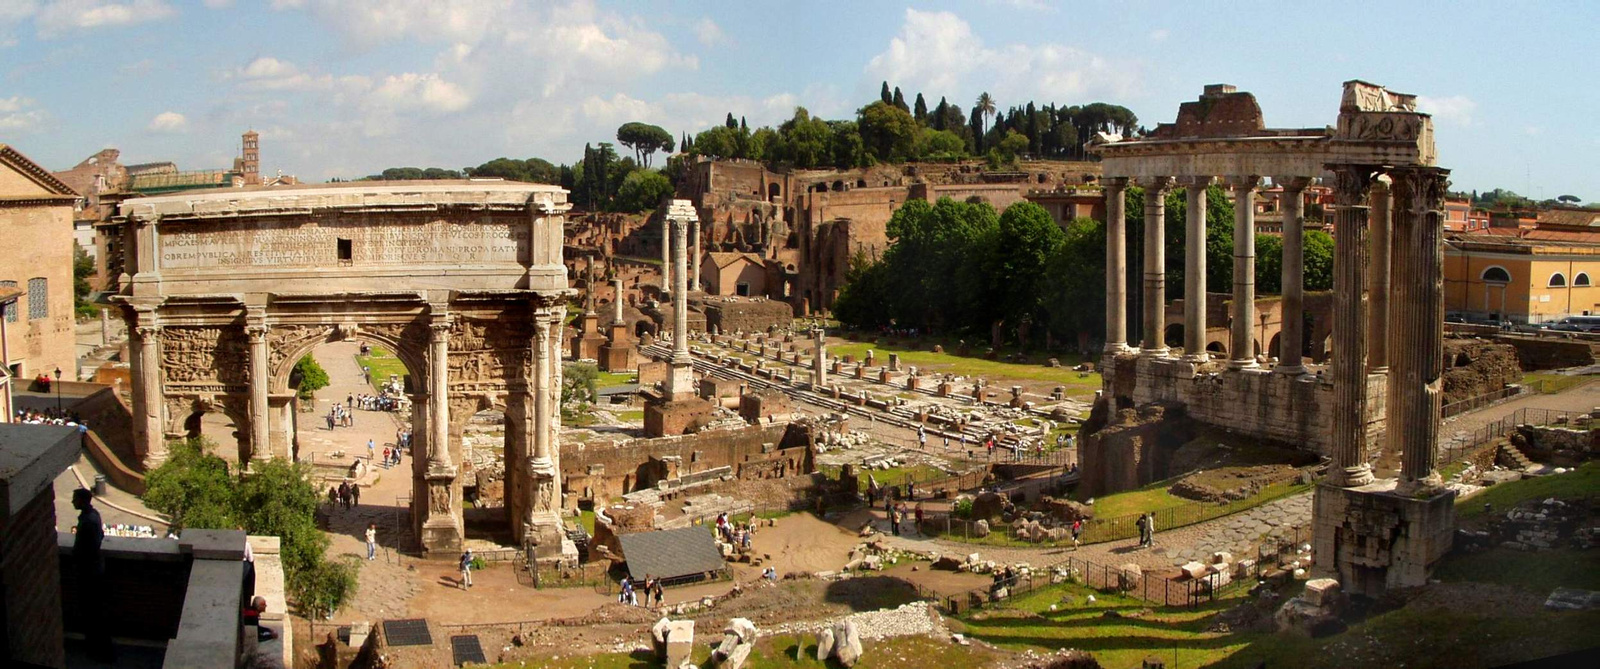 Forum Romanum panorama